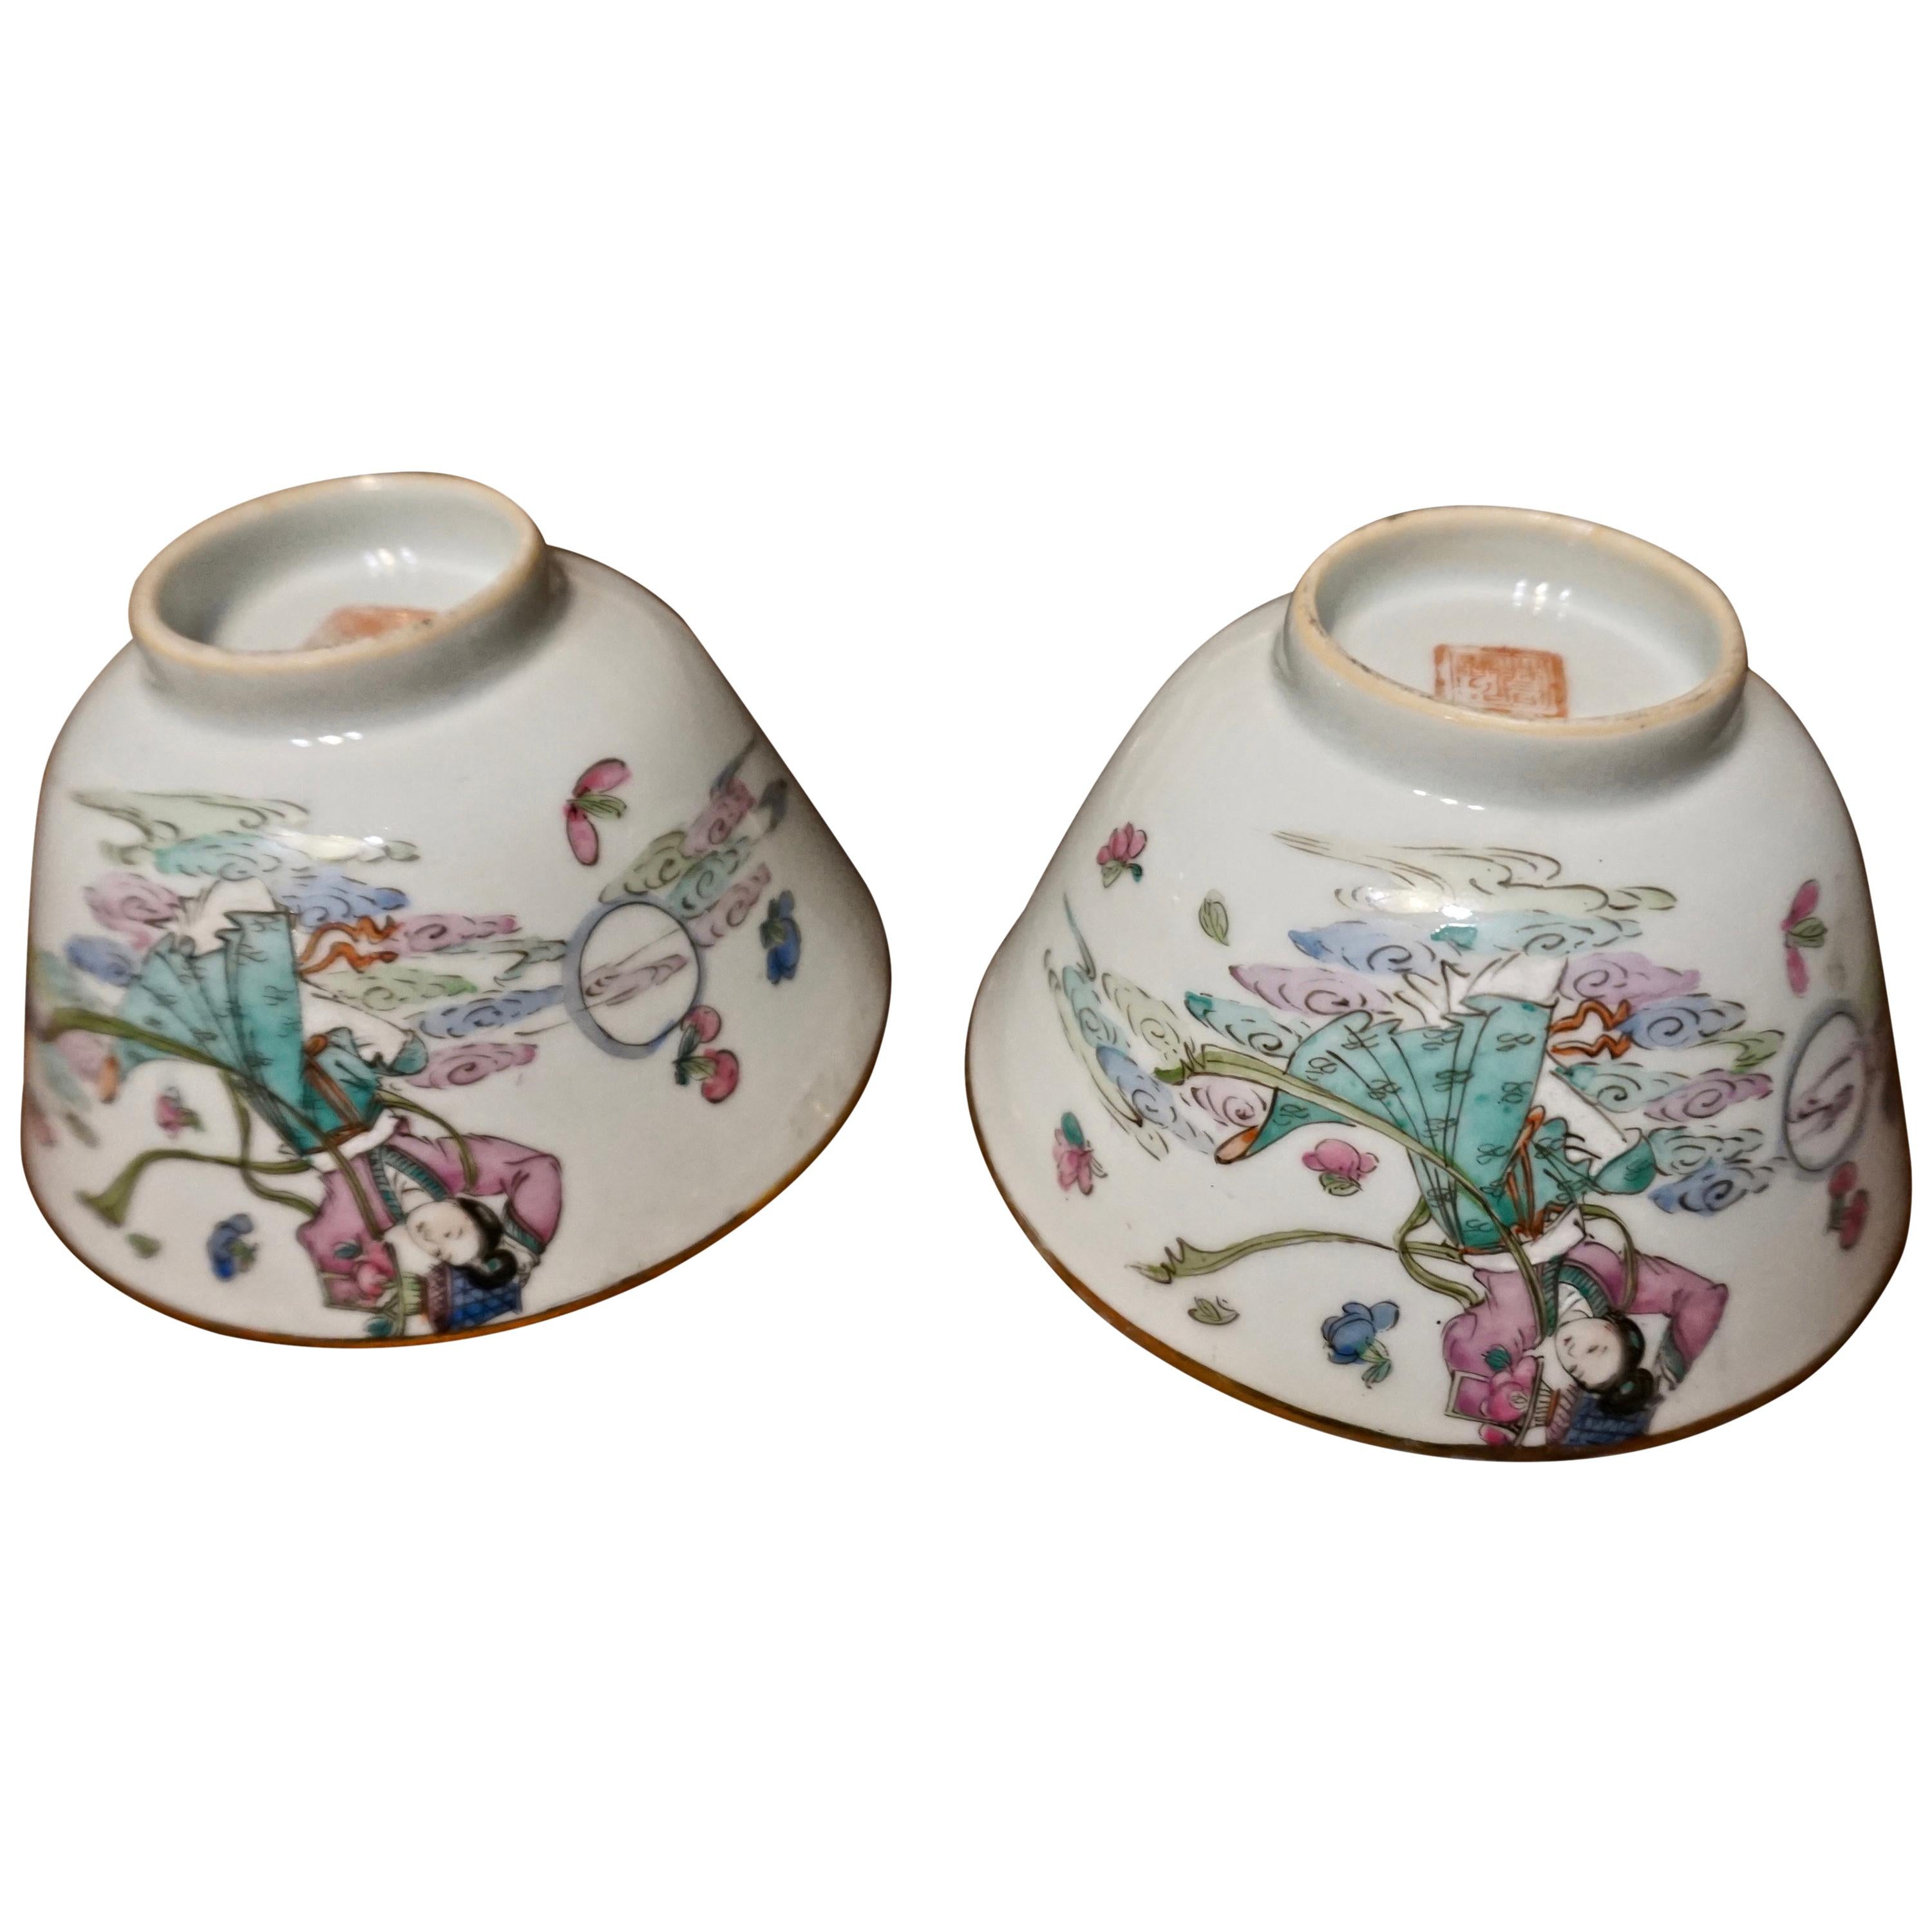 Bols en céramique peints à la main d'exportation chinoise des années 1920